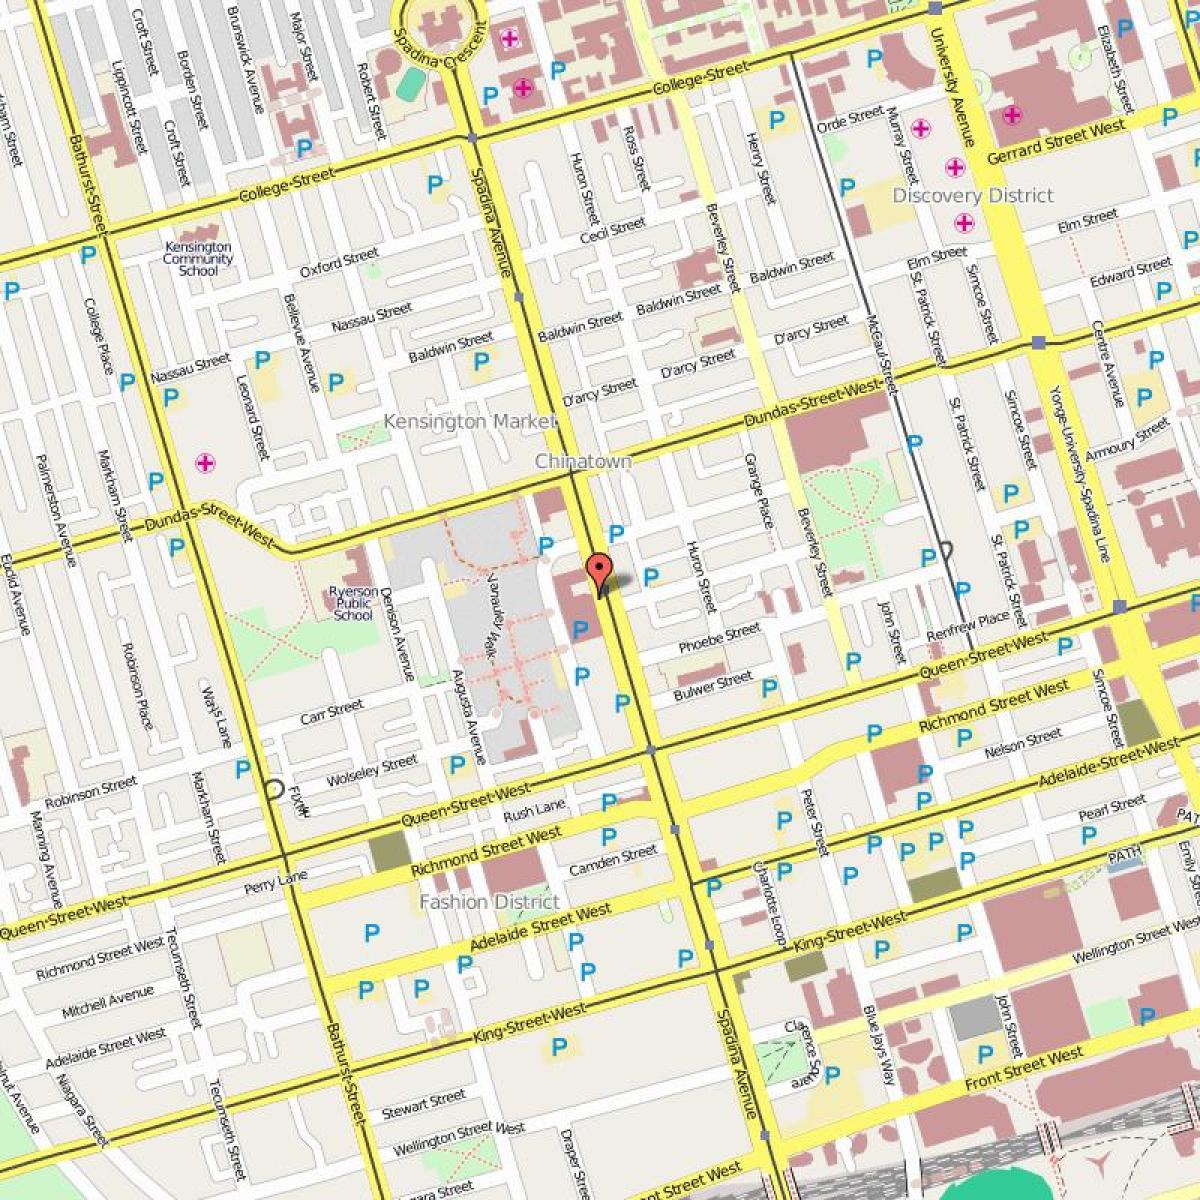 Mappa di Chinatown di Toronto